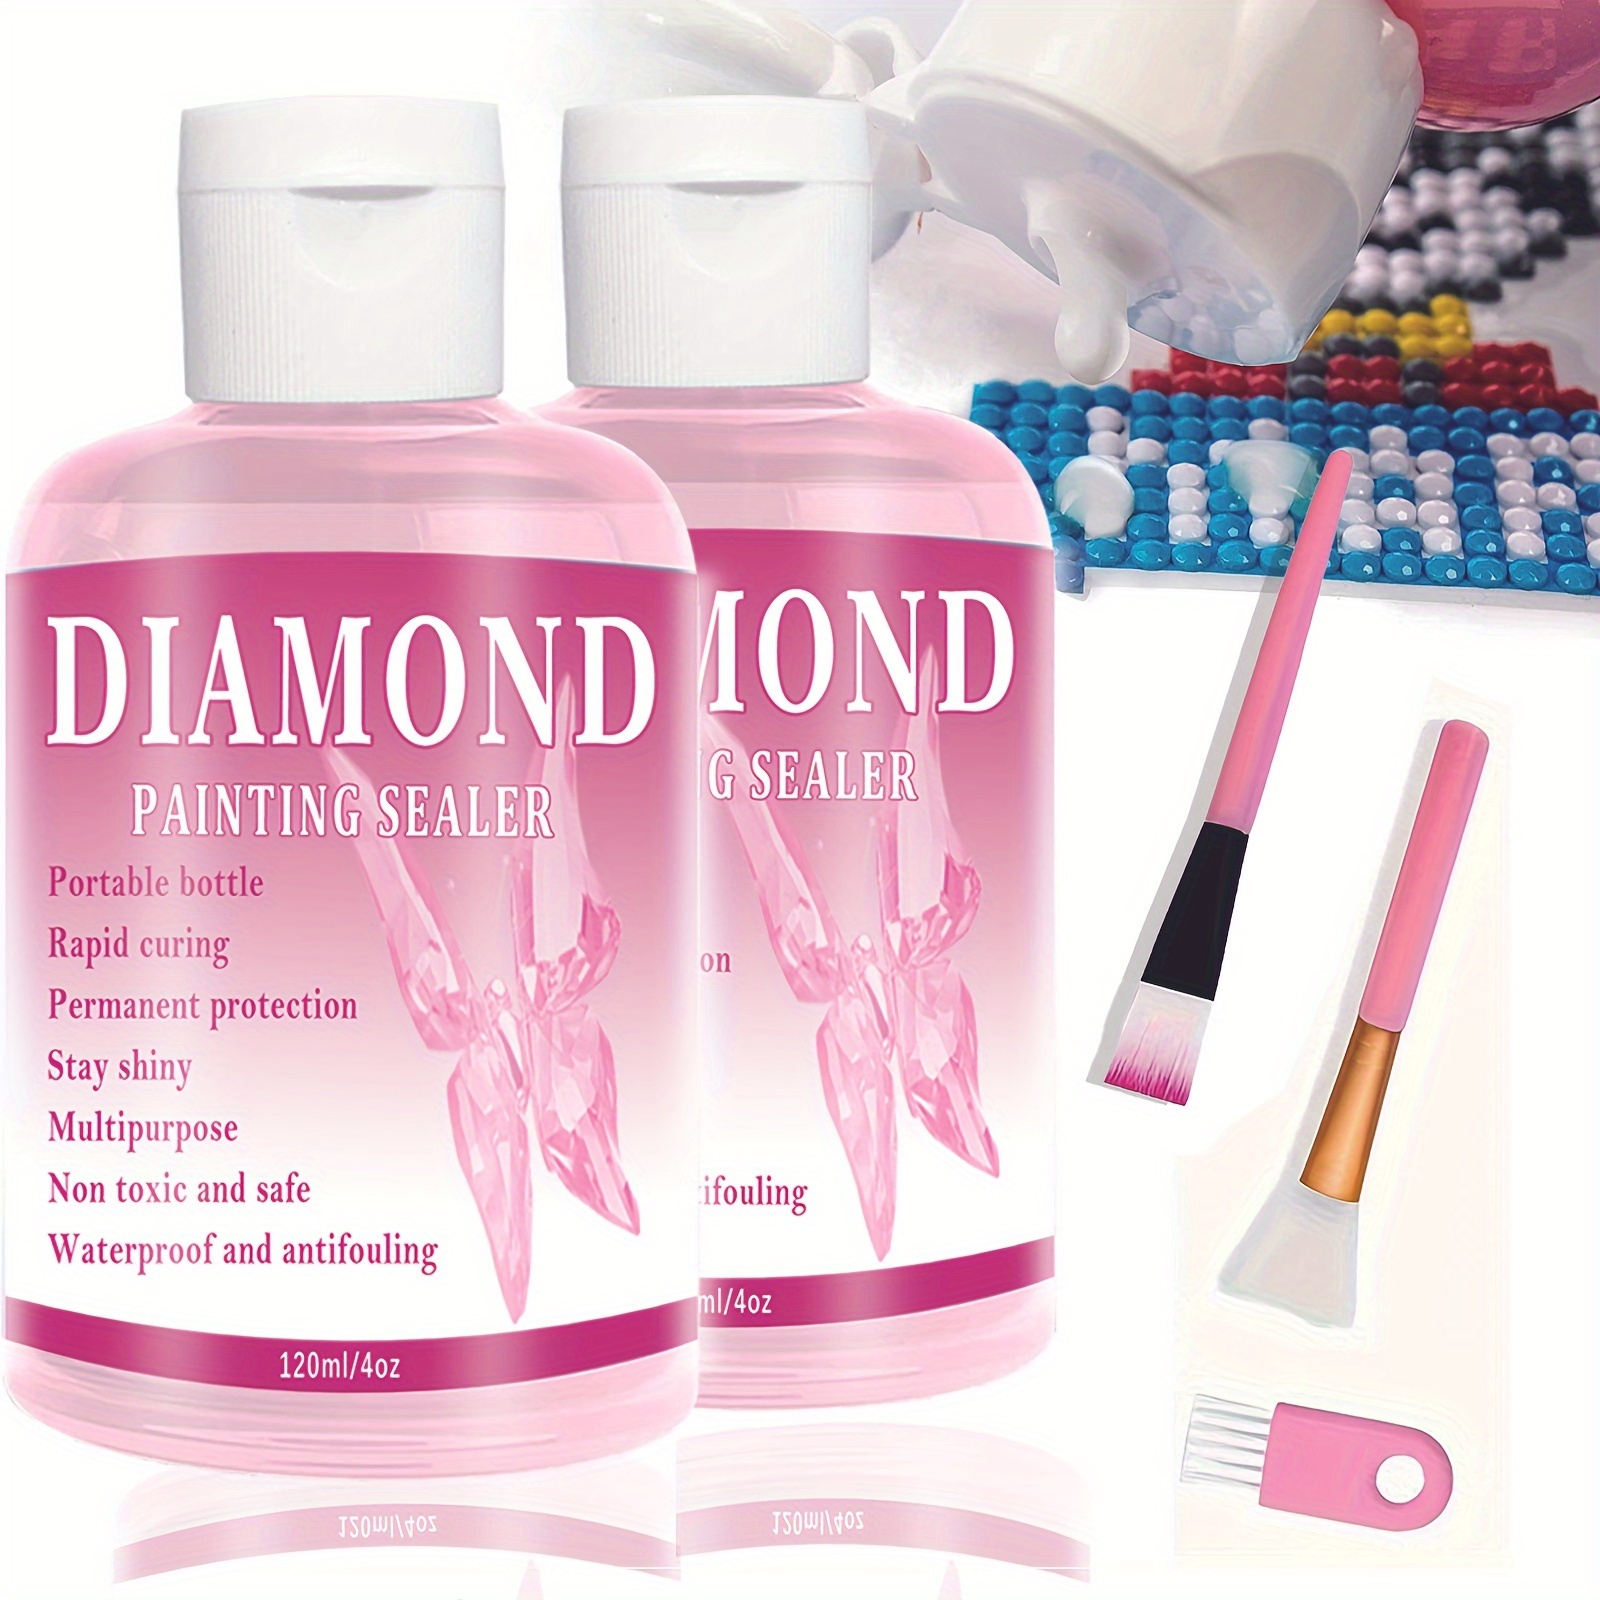 Tigilt Diamond Painting Sealer Multipurpose 4 oz/ 120 ml